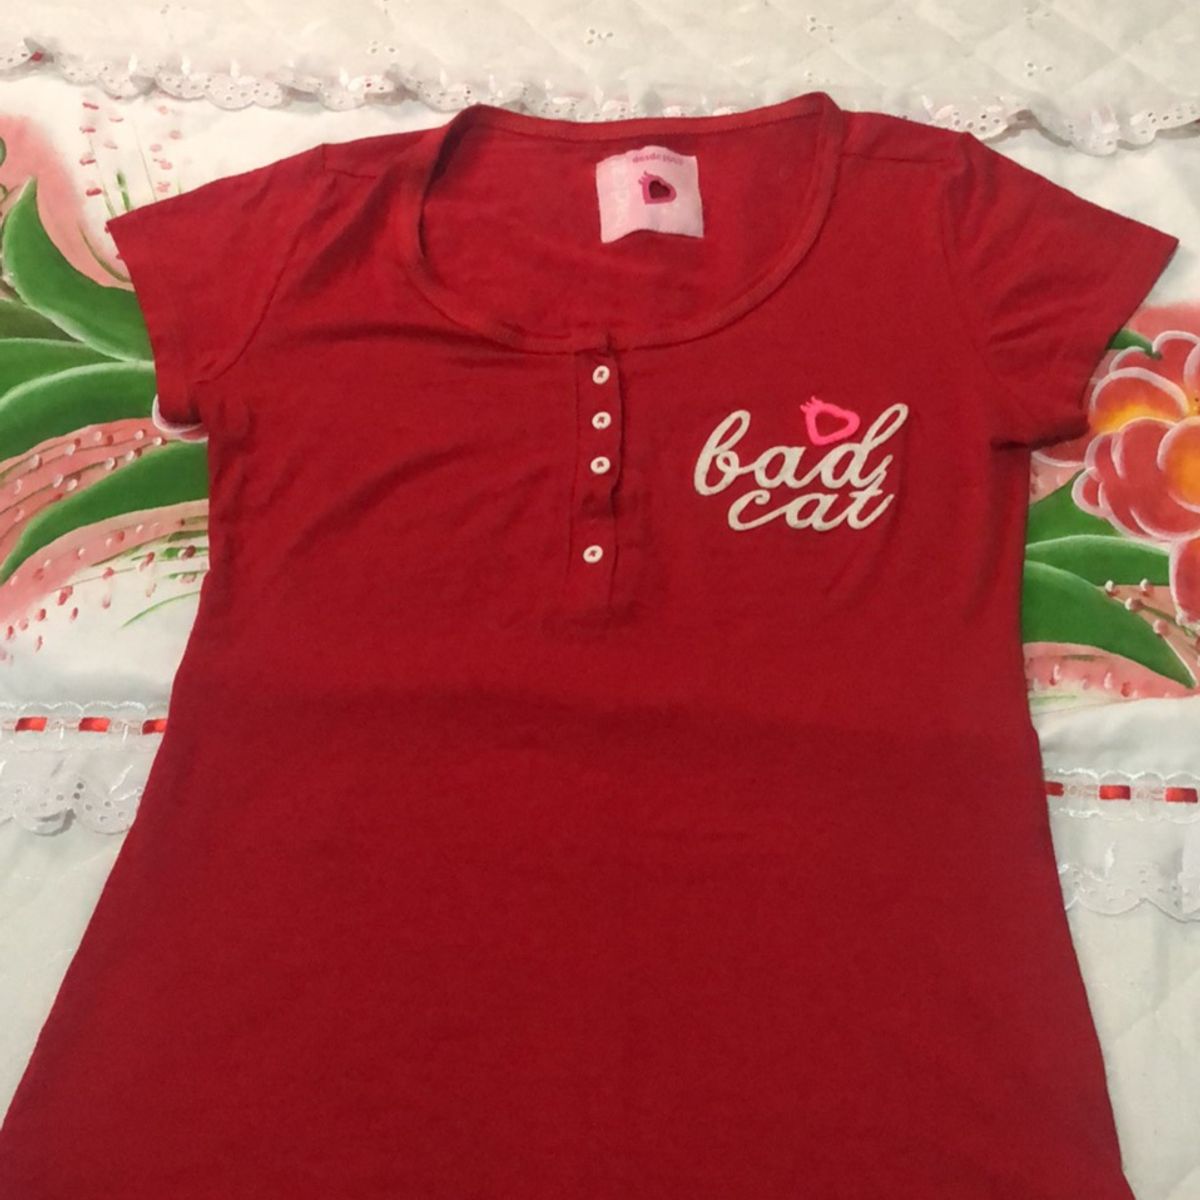 Camisa Social de Bolinha, Camisa Feminina Bad Cat Usado 37185023